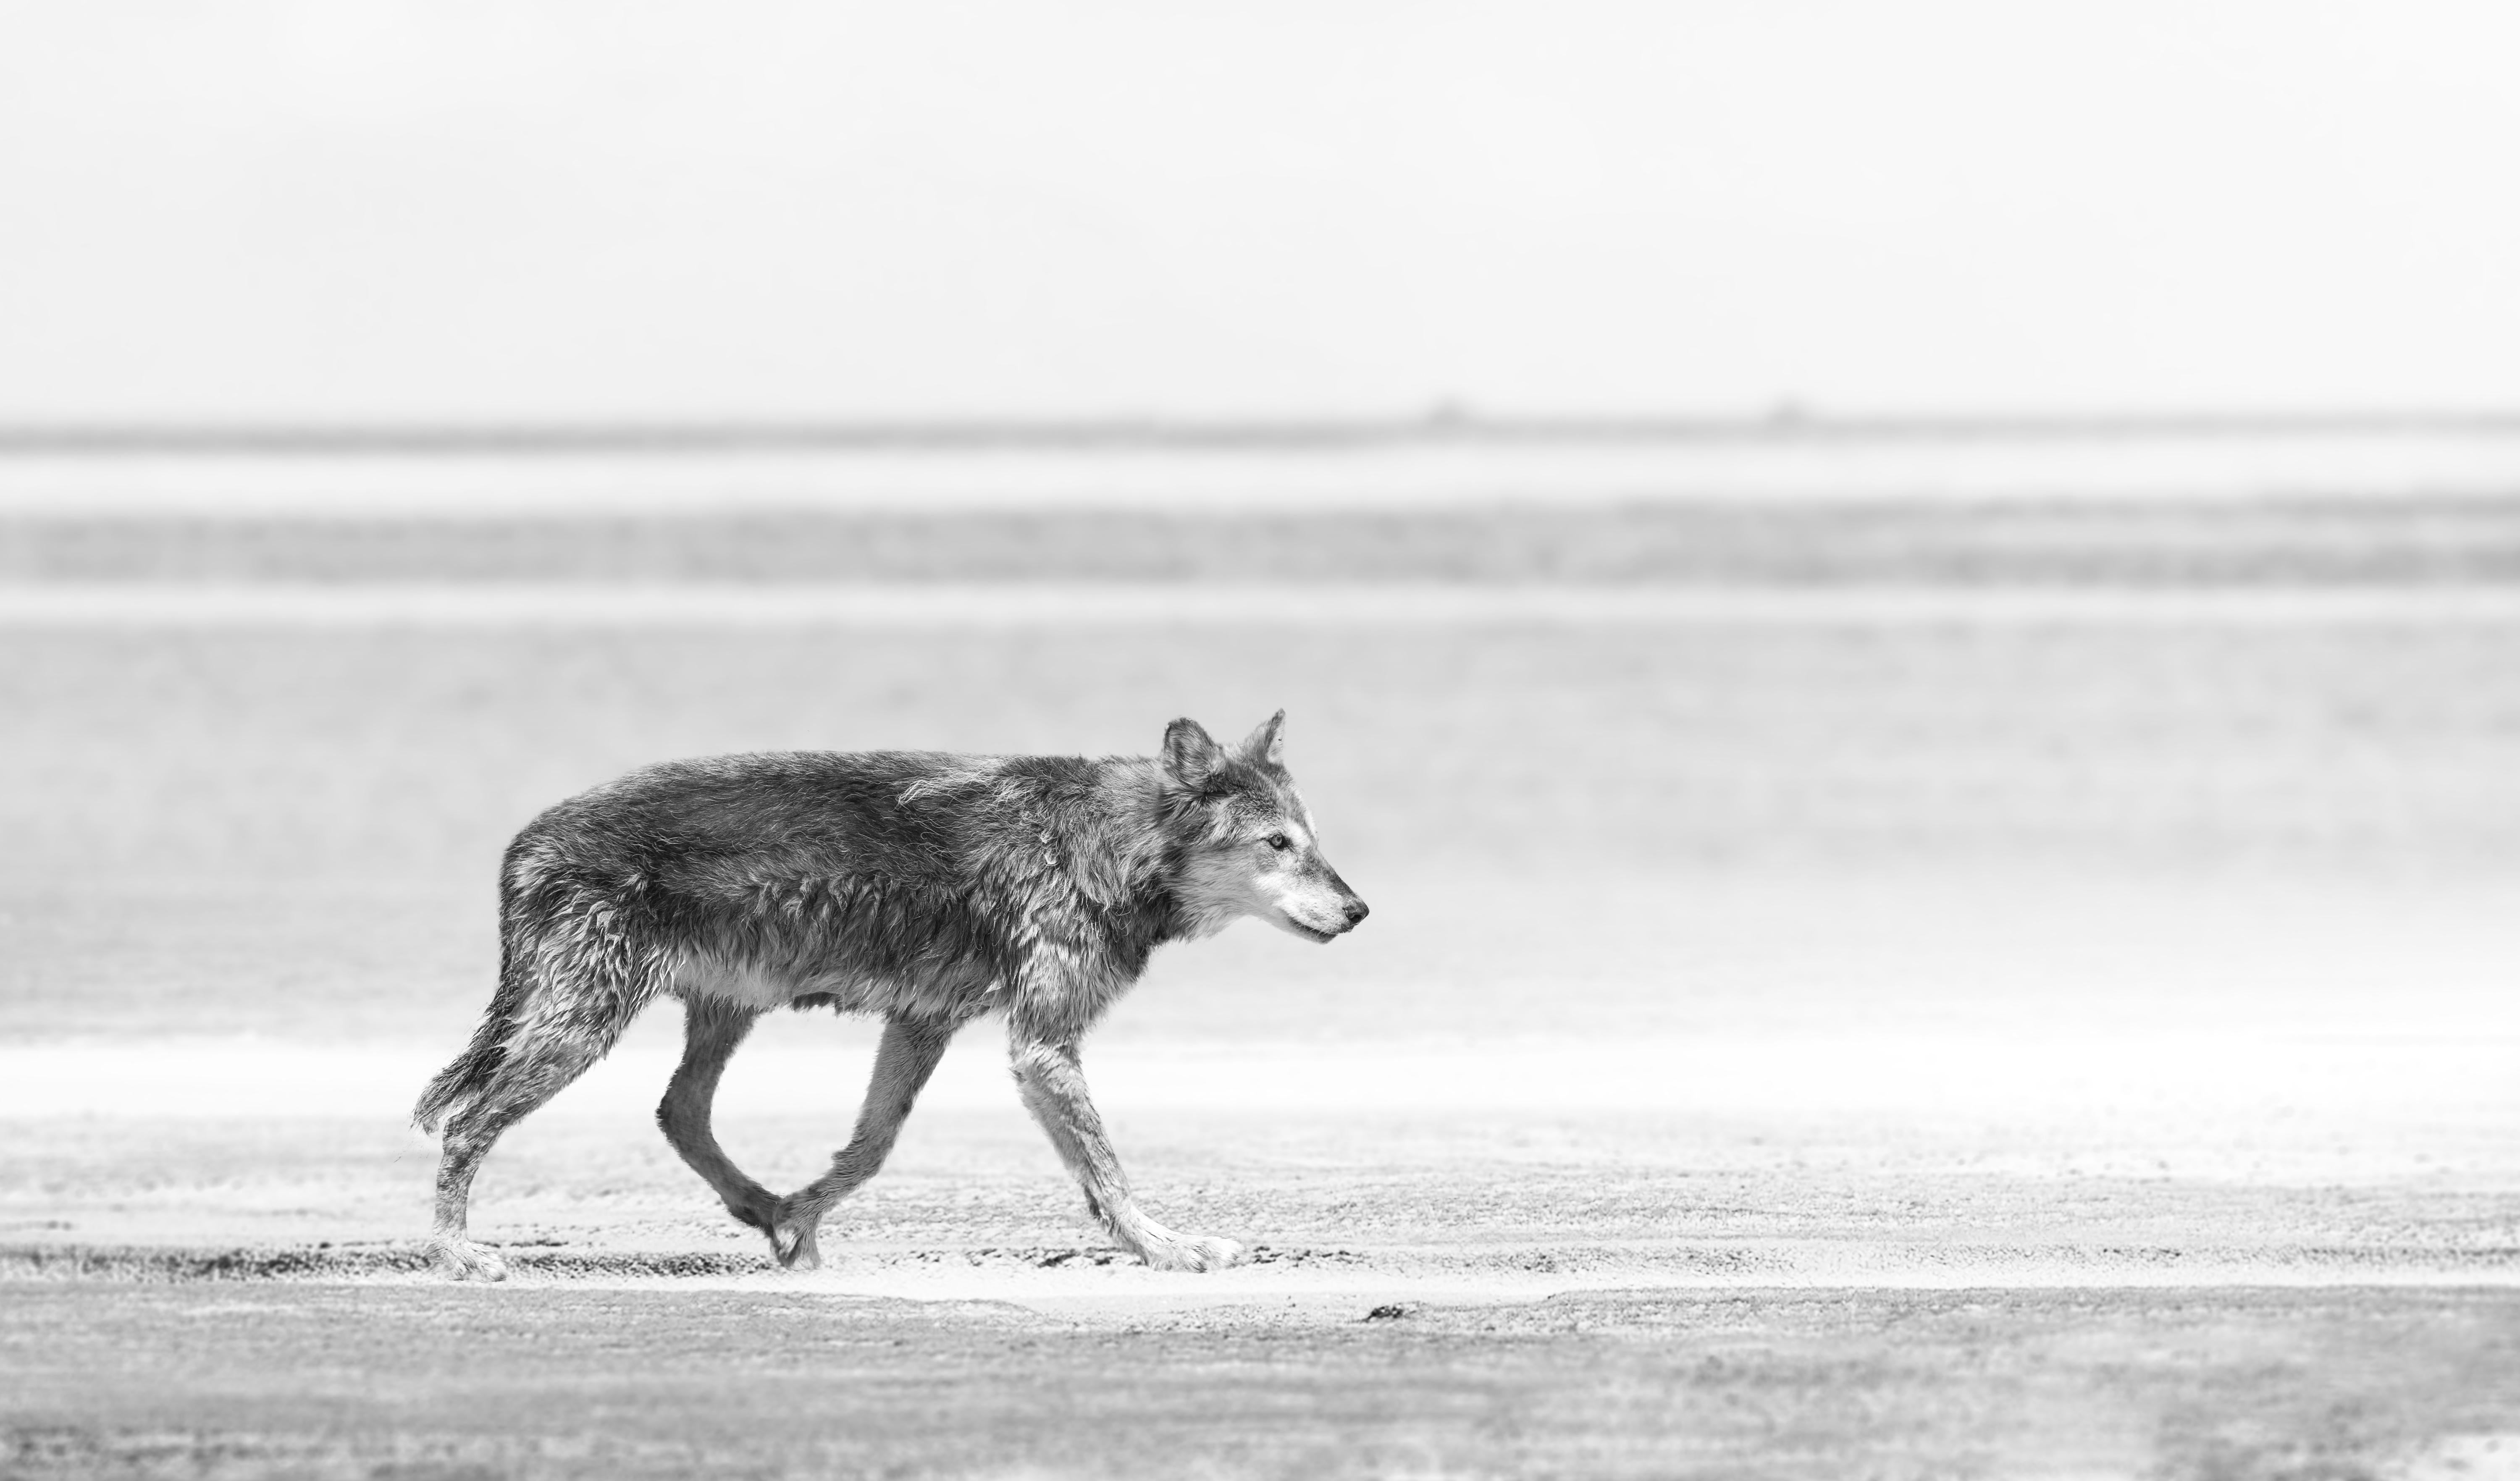 Dies ist eine zeitgenössische Schwarz-Weiß-Fotografie eines Küstenwolfs.
Gedruckt auf Archivpapier, das nur mit Archivtinte bedruckt ist. 
Auflage von 50 Stück
Signiert und nummeriert 
Einrahmung verfügbar. Erkundigen Sie sich nach den Preisen. 

